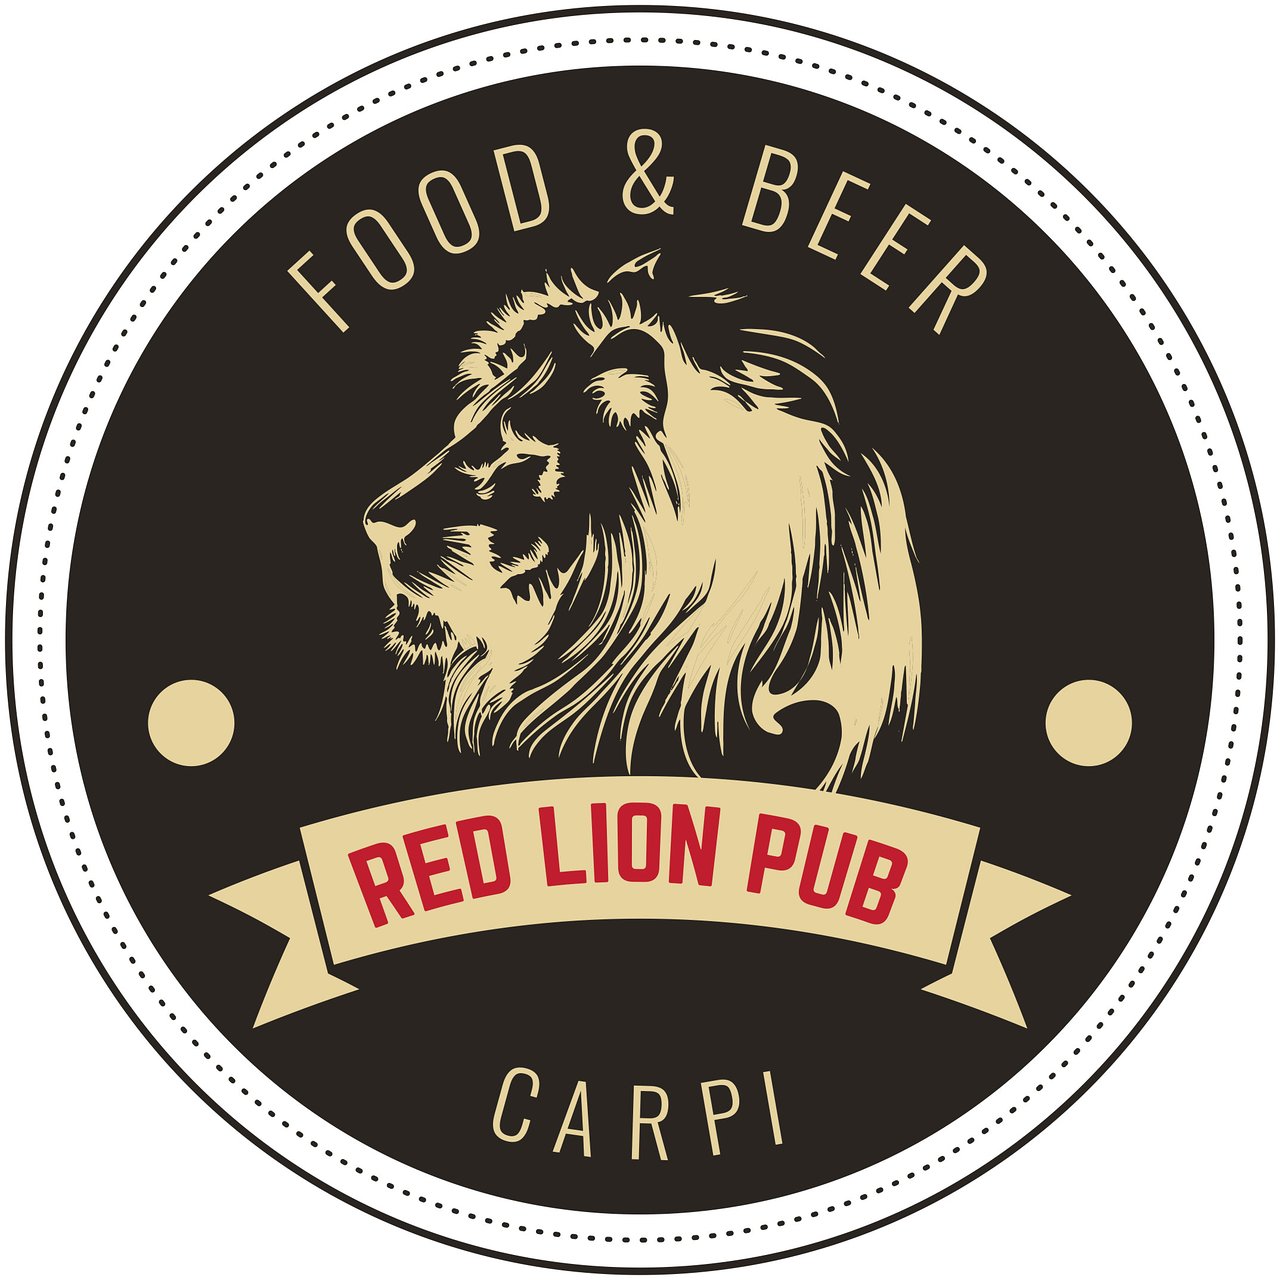 Red Lion Pub Carpi, Carpi